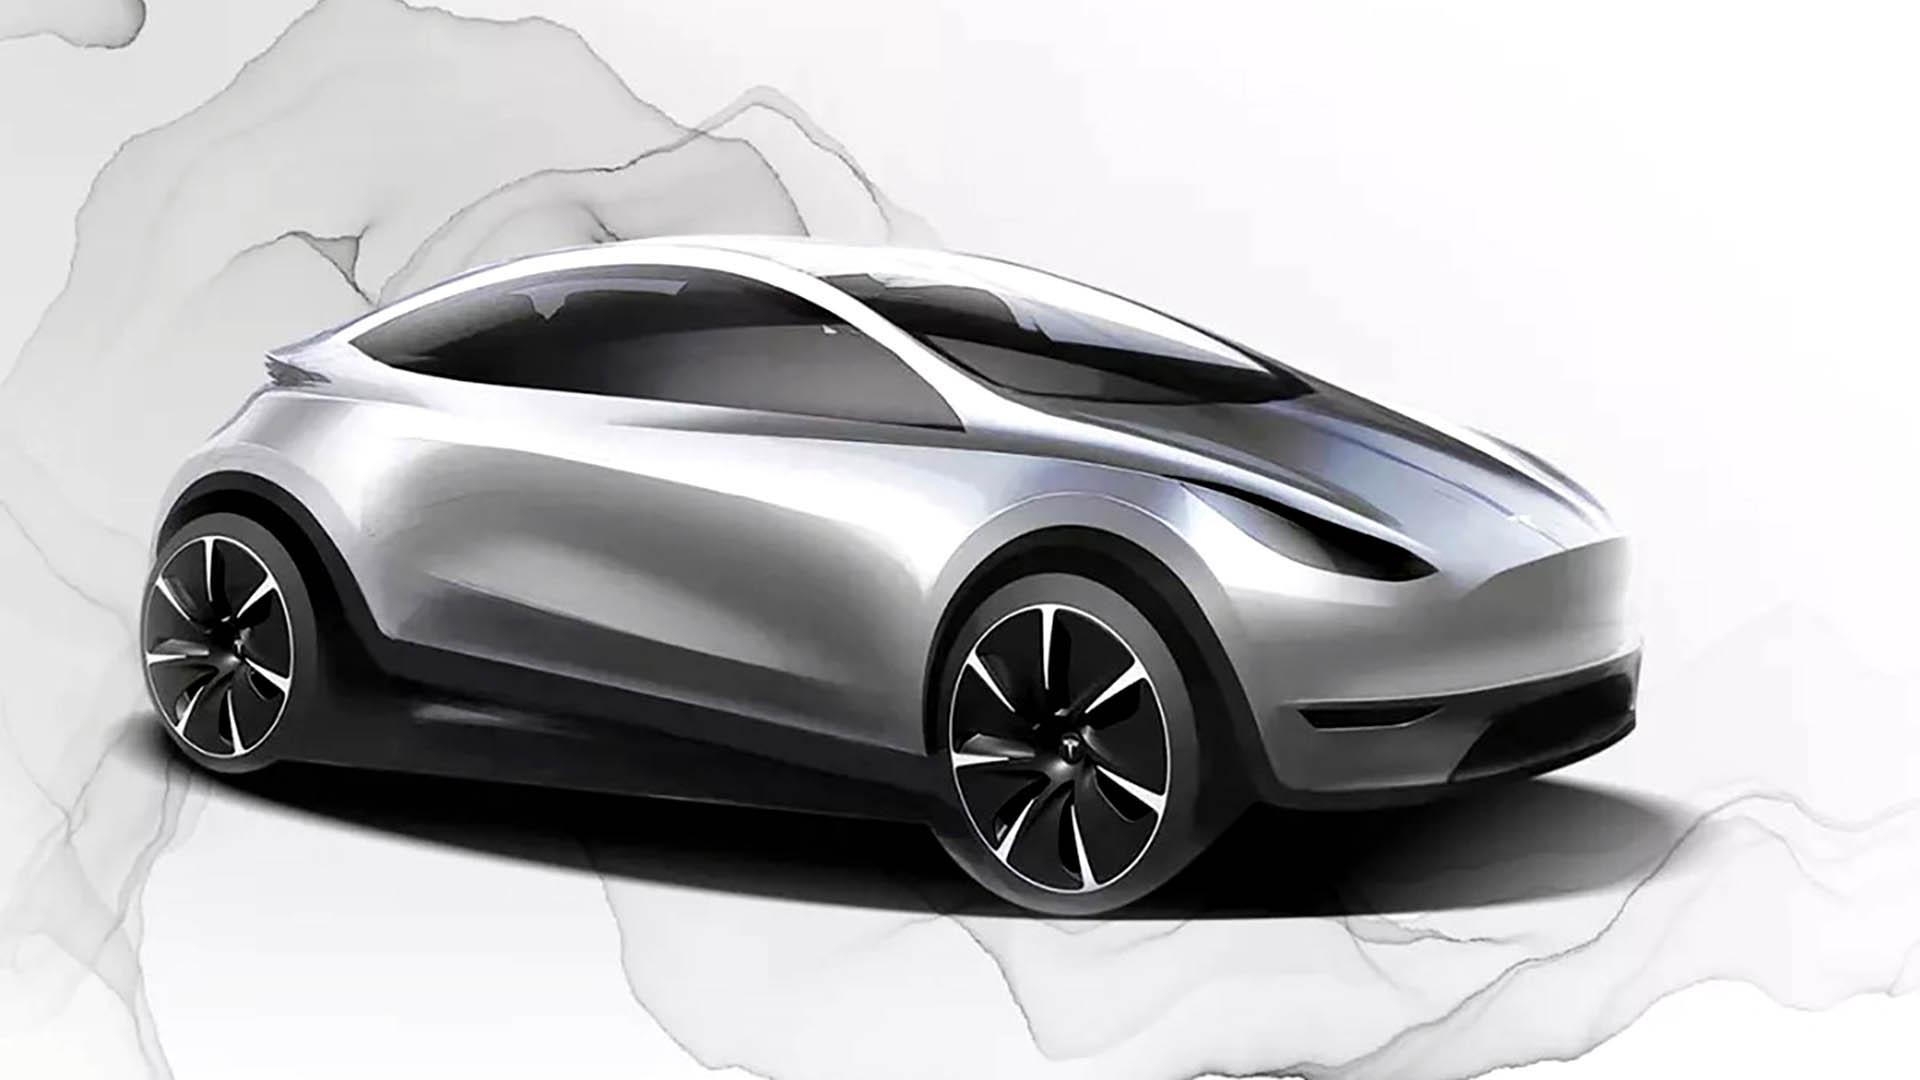 Los bocetos son siempre estimaciones externas, pero el Tesla Model 2 sería el auto más compacto de la línea